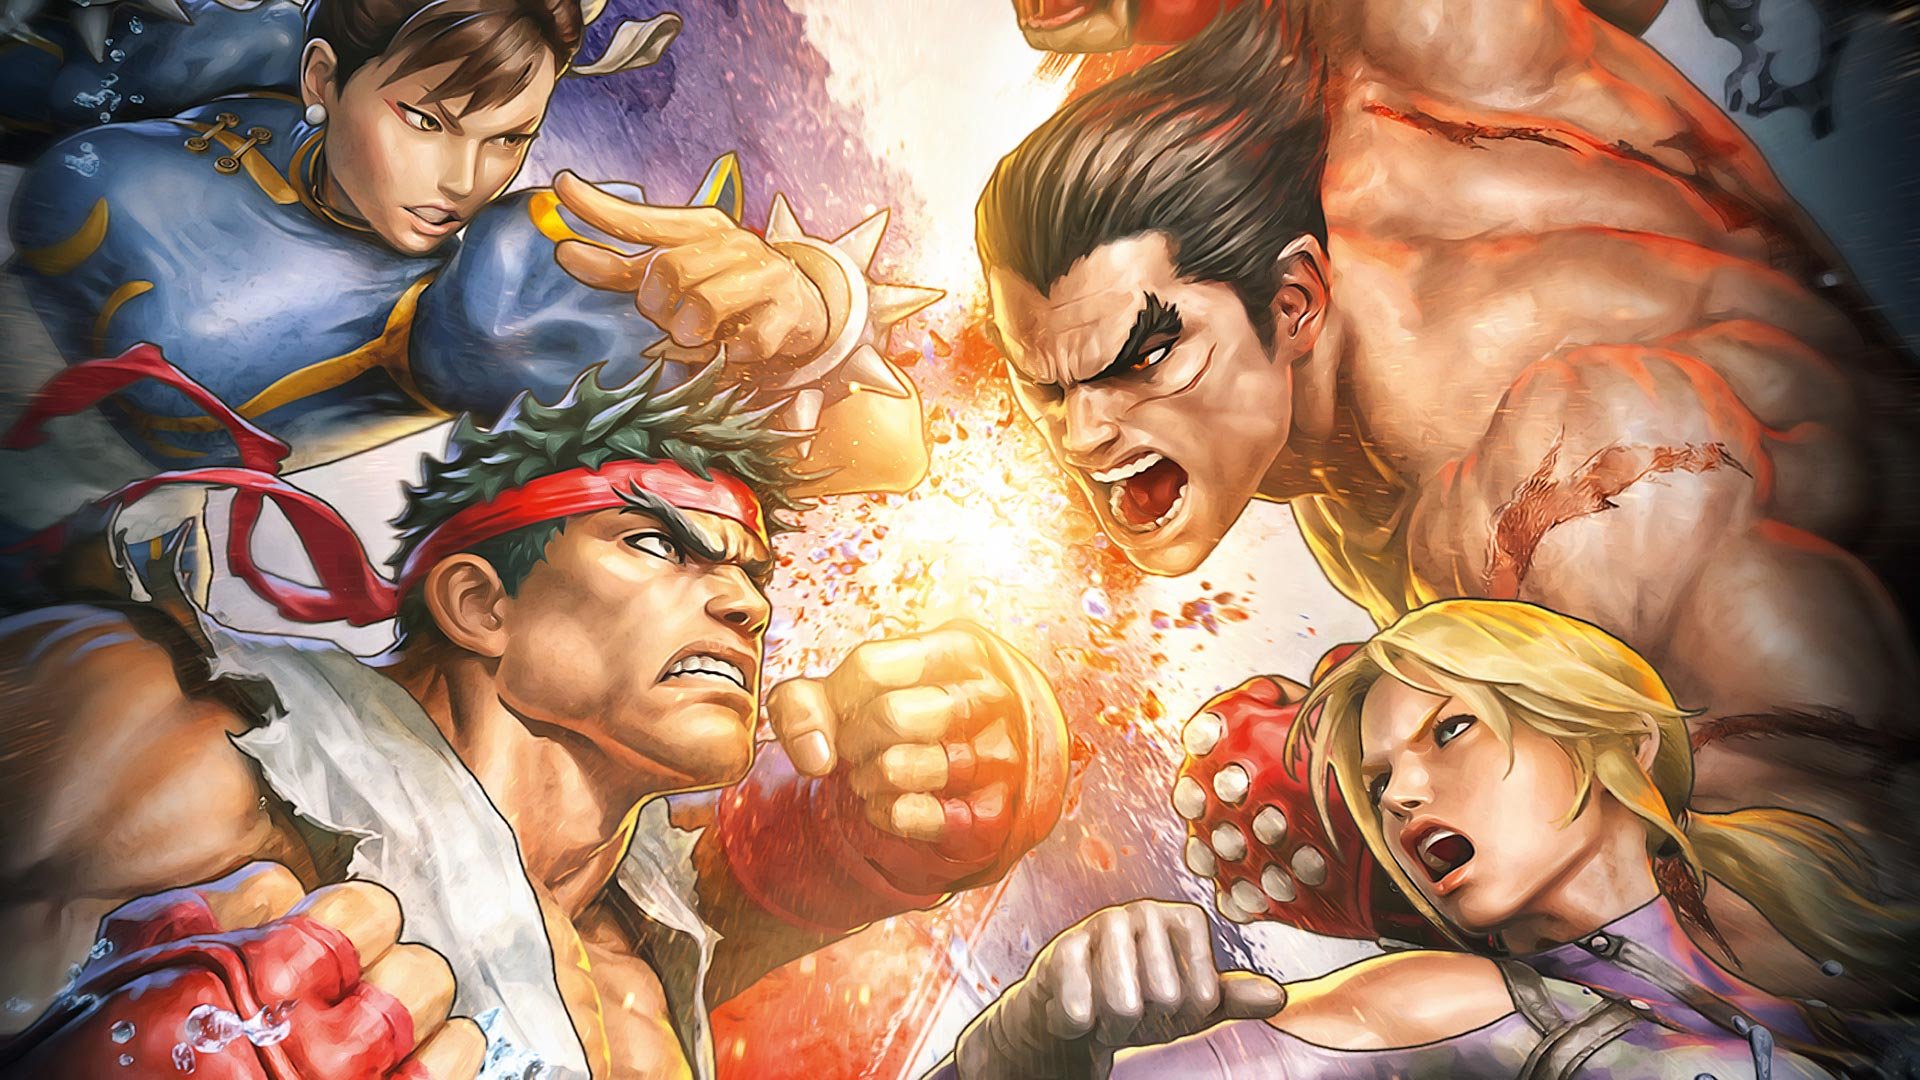 Best Street Fighter X Tekken wallpaper ID:246462 for High Resolution hd 1080p computer